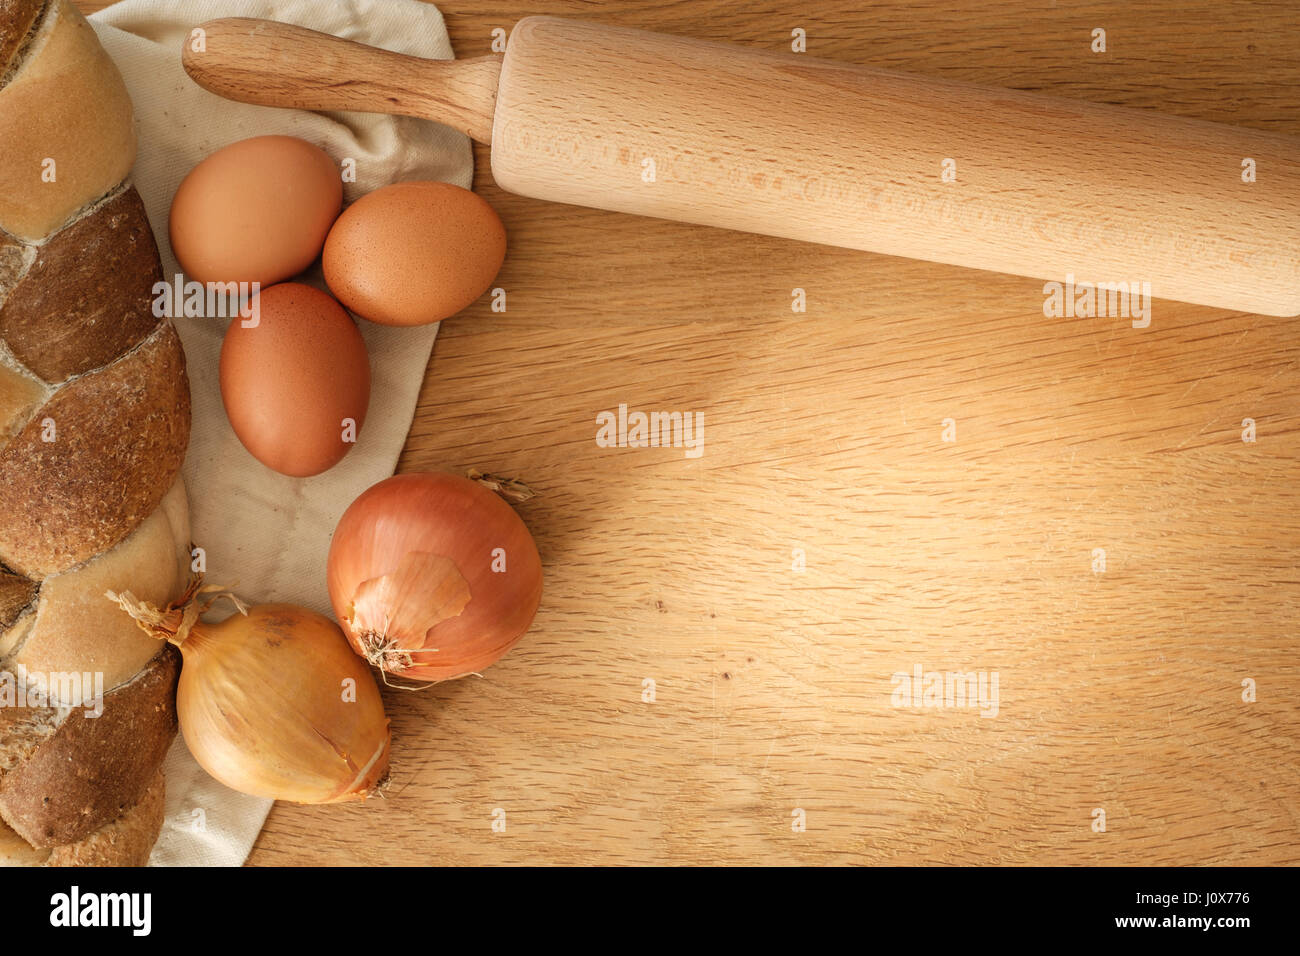 geflochtene Brot mit Zwiebeln, Eiern und Nudelholz auf einem Holztisch mit Textfreiraum, Food-Konzept Stockfoto